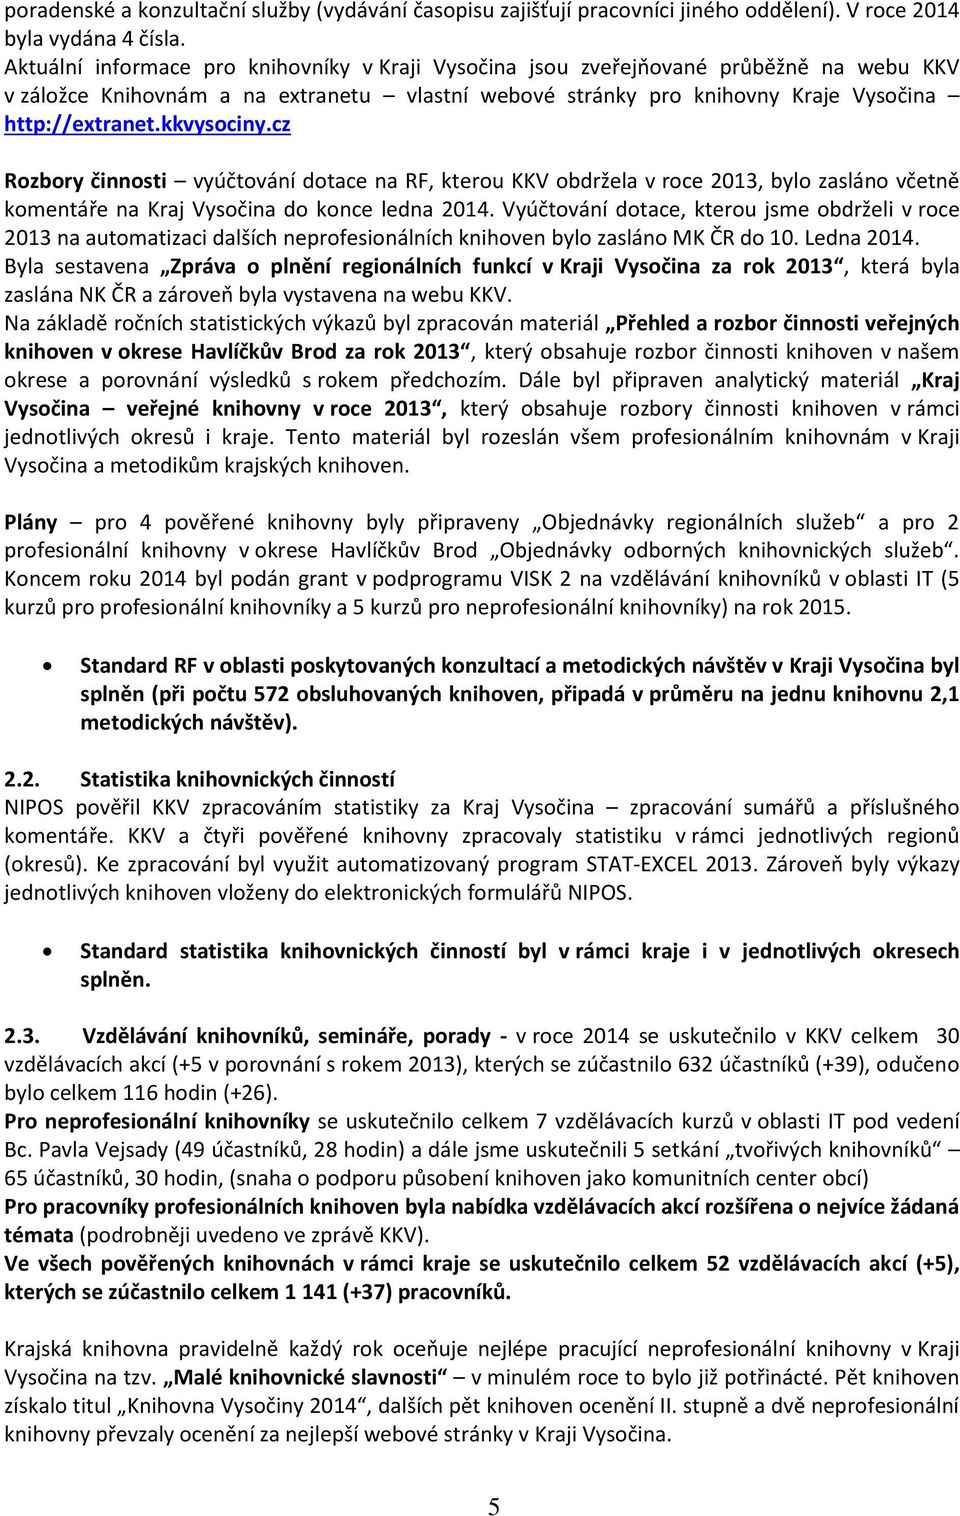 kkvysociny.cz Rozbory činnosti vyúčtování dotace na RF, kterou KKV obdržela v roce 2013, bylo zasláno včetně komentáře na Kraj Vysočina do konce ledna 2014.